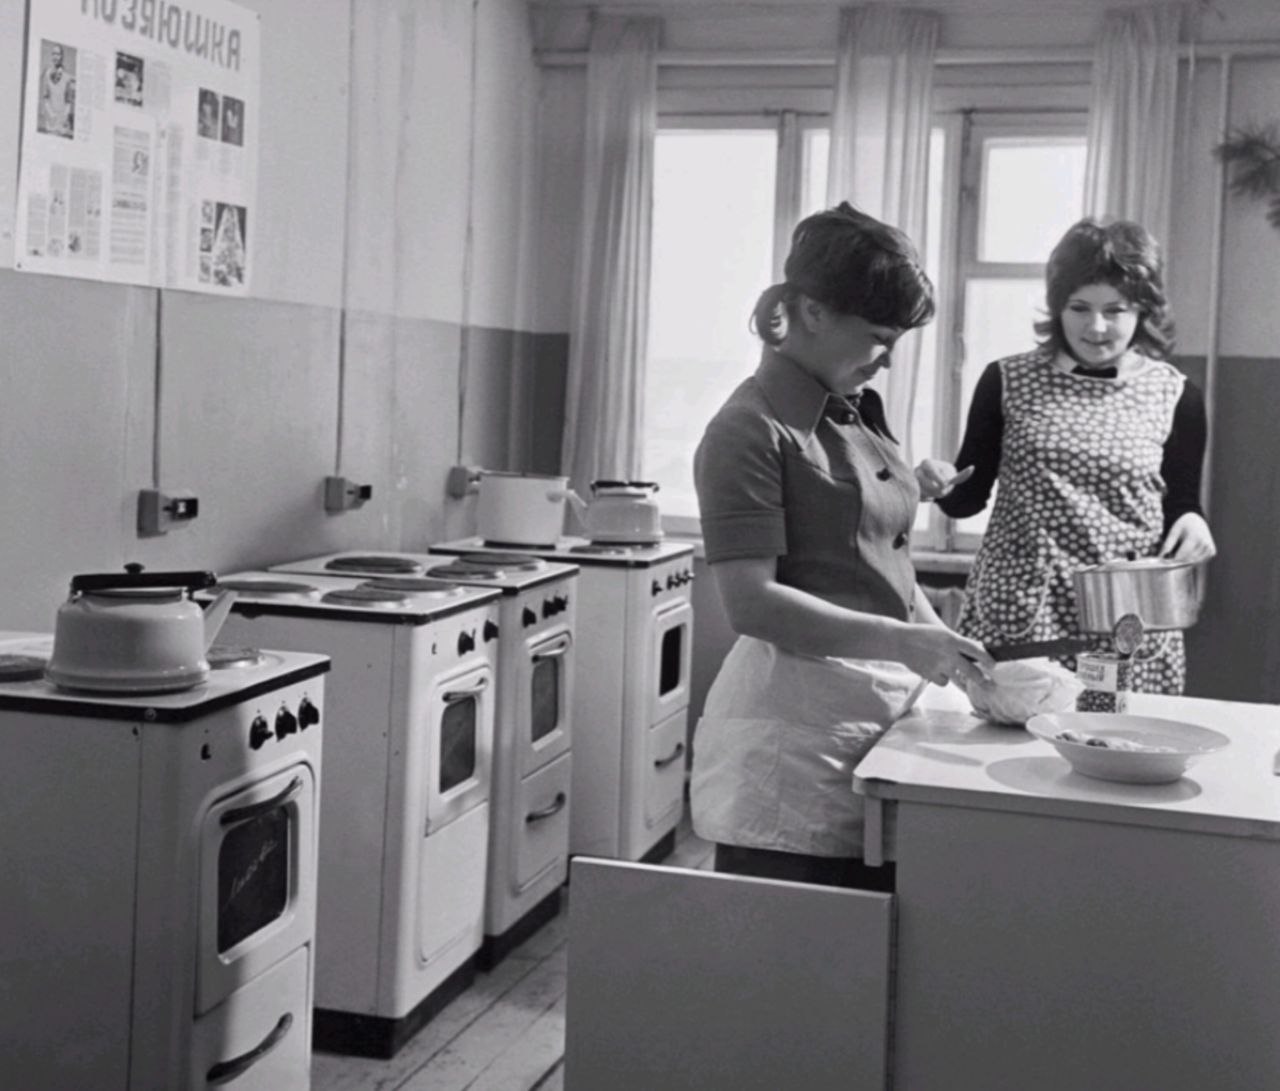 Как жили 80 году. Советское общежитие СССР. Советская кухня. Советская женщина на кухне. Советское студенческое общежитие.